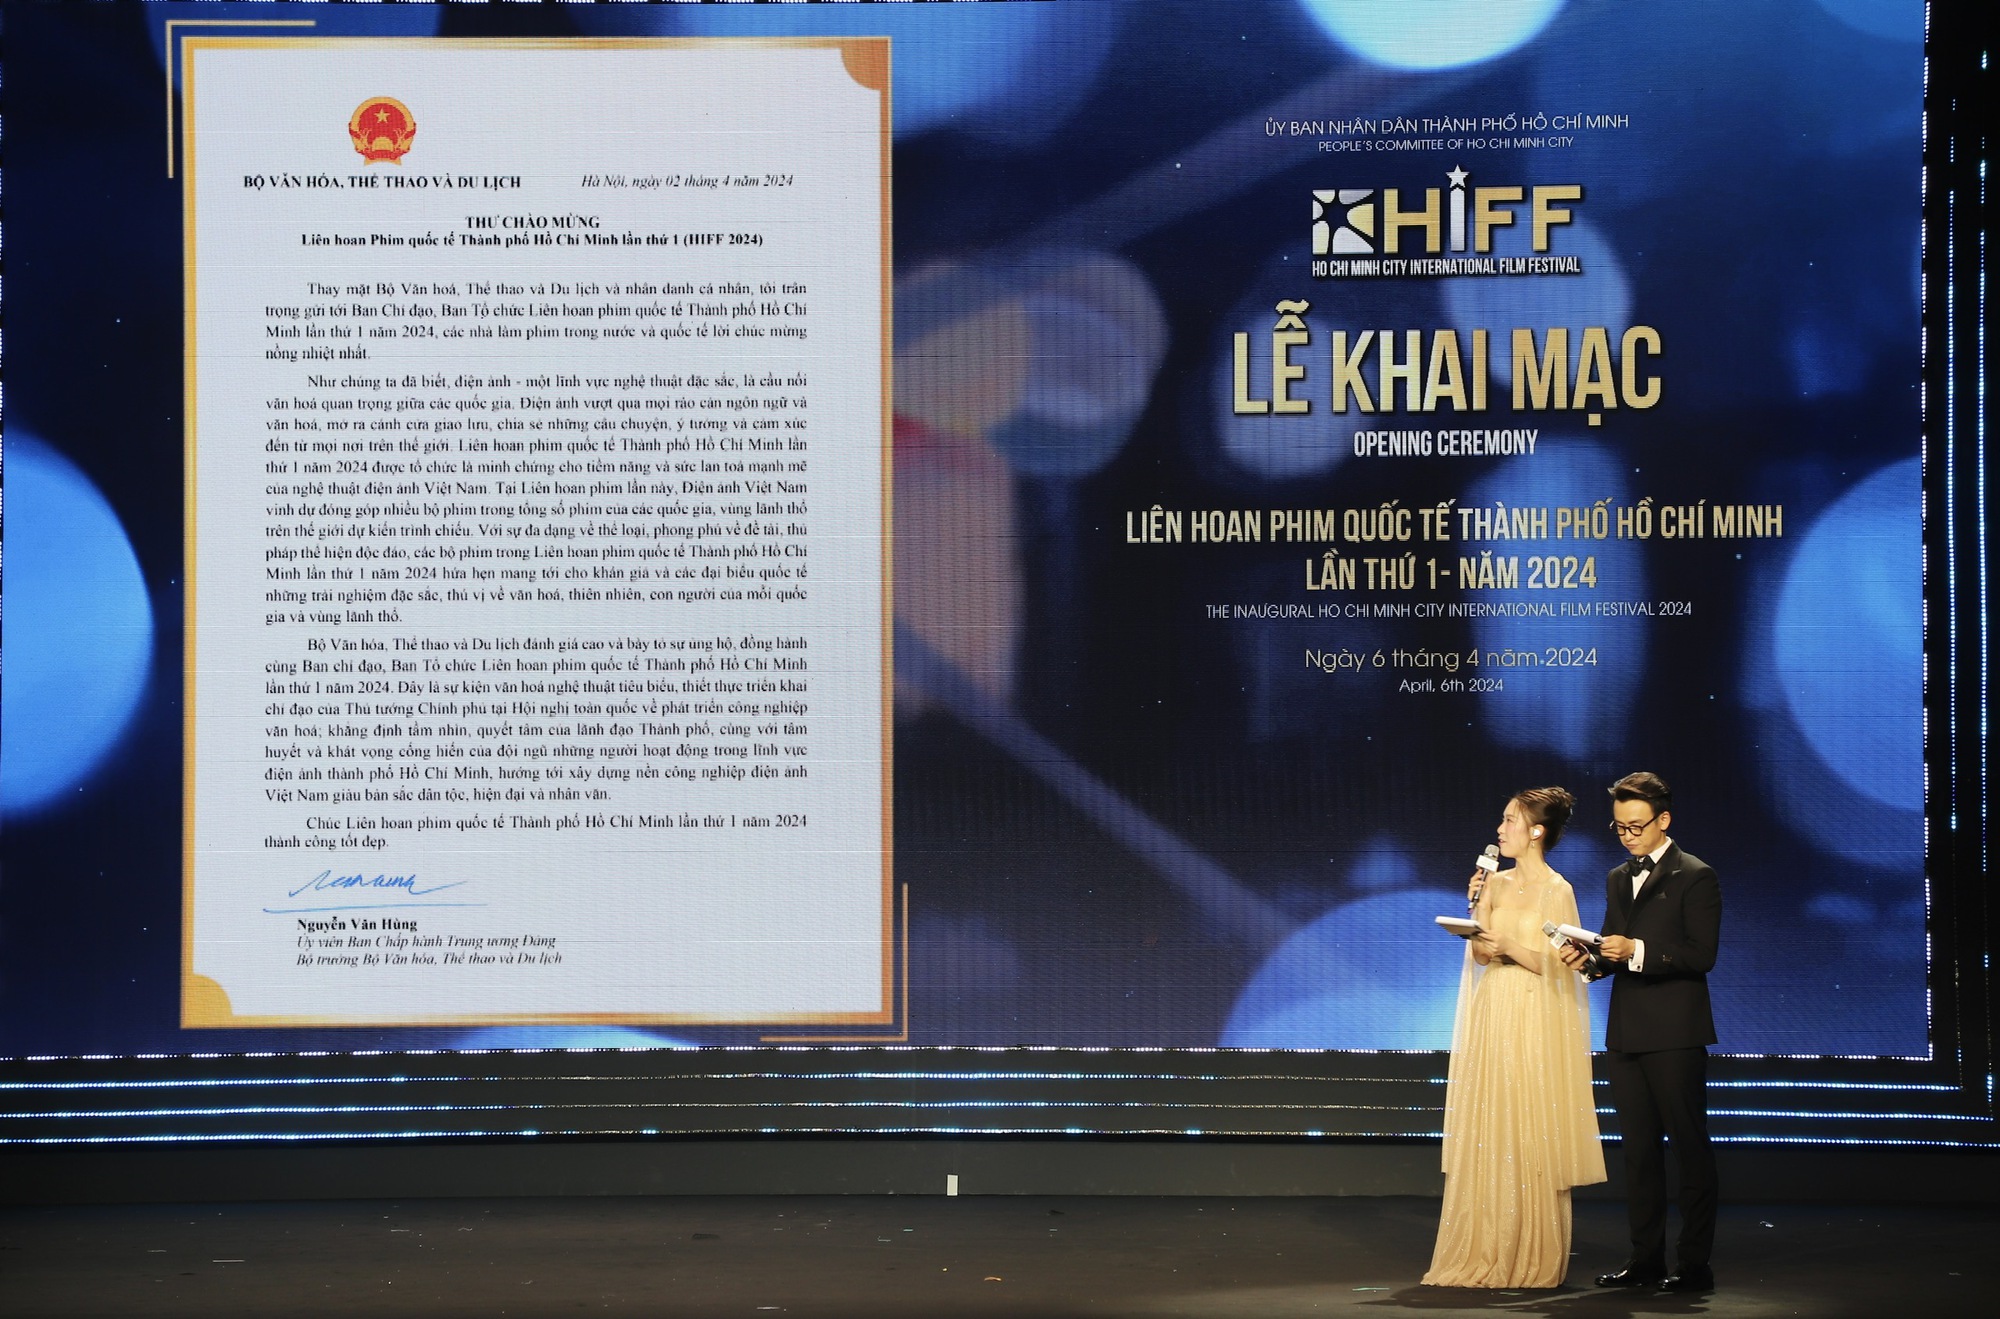 Khai mạc Liên hoan Phim quốc tế Thành phố Hồ Chí Minh lần thứ 1 - HIFF 2024 - Ảnh 4.